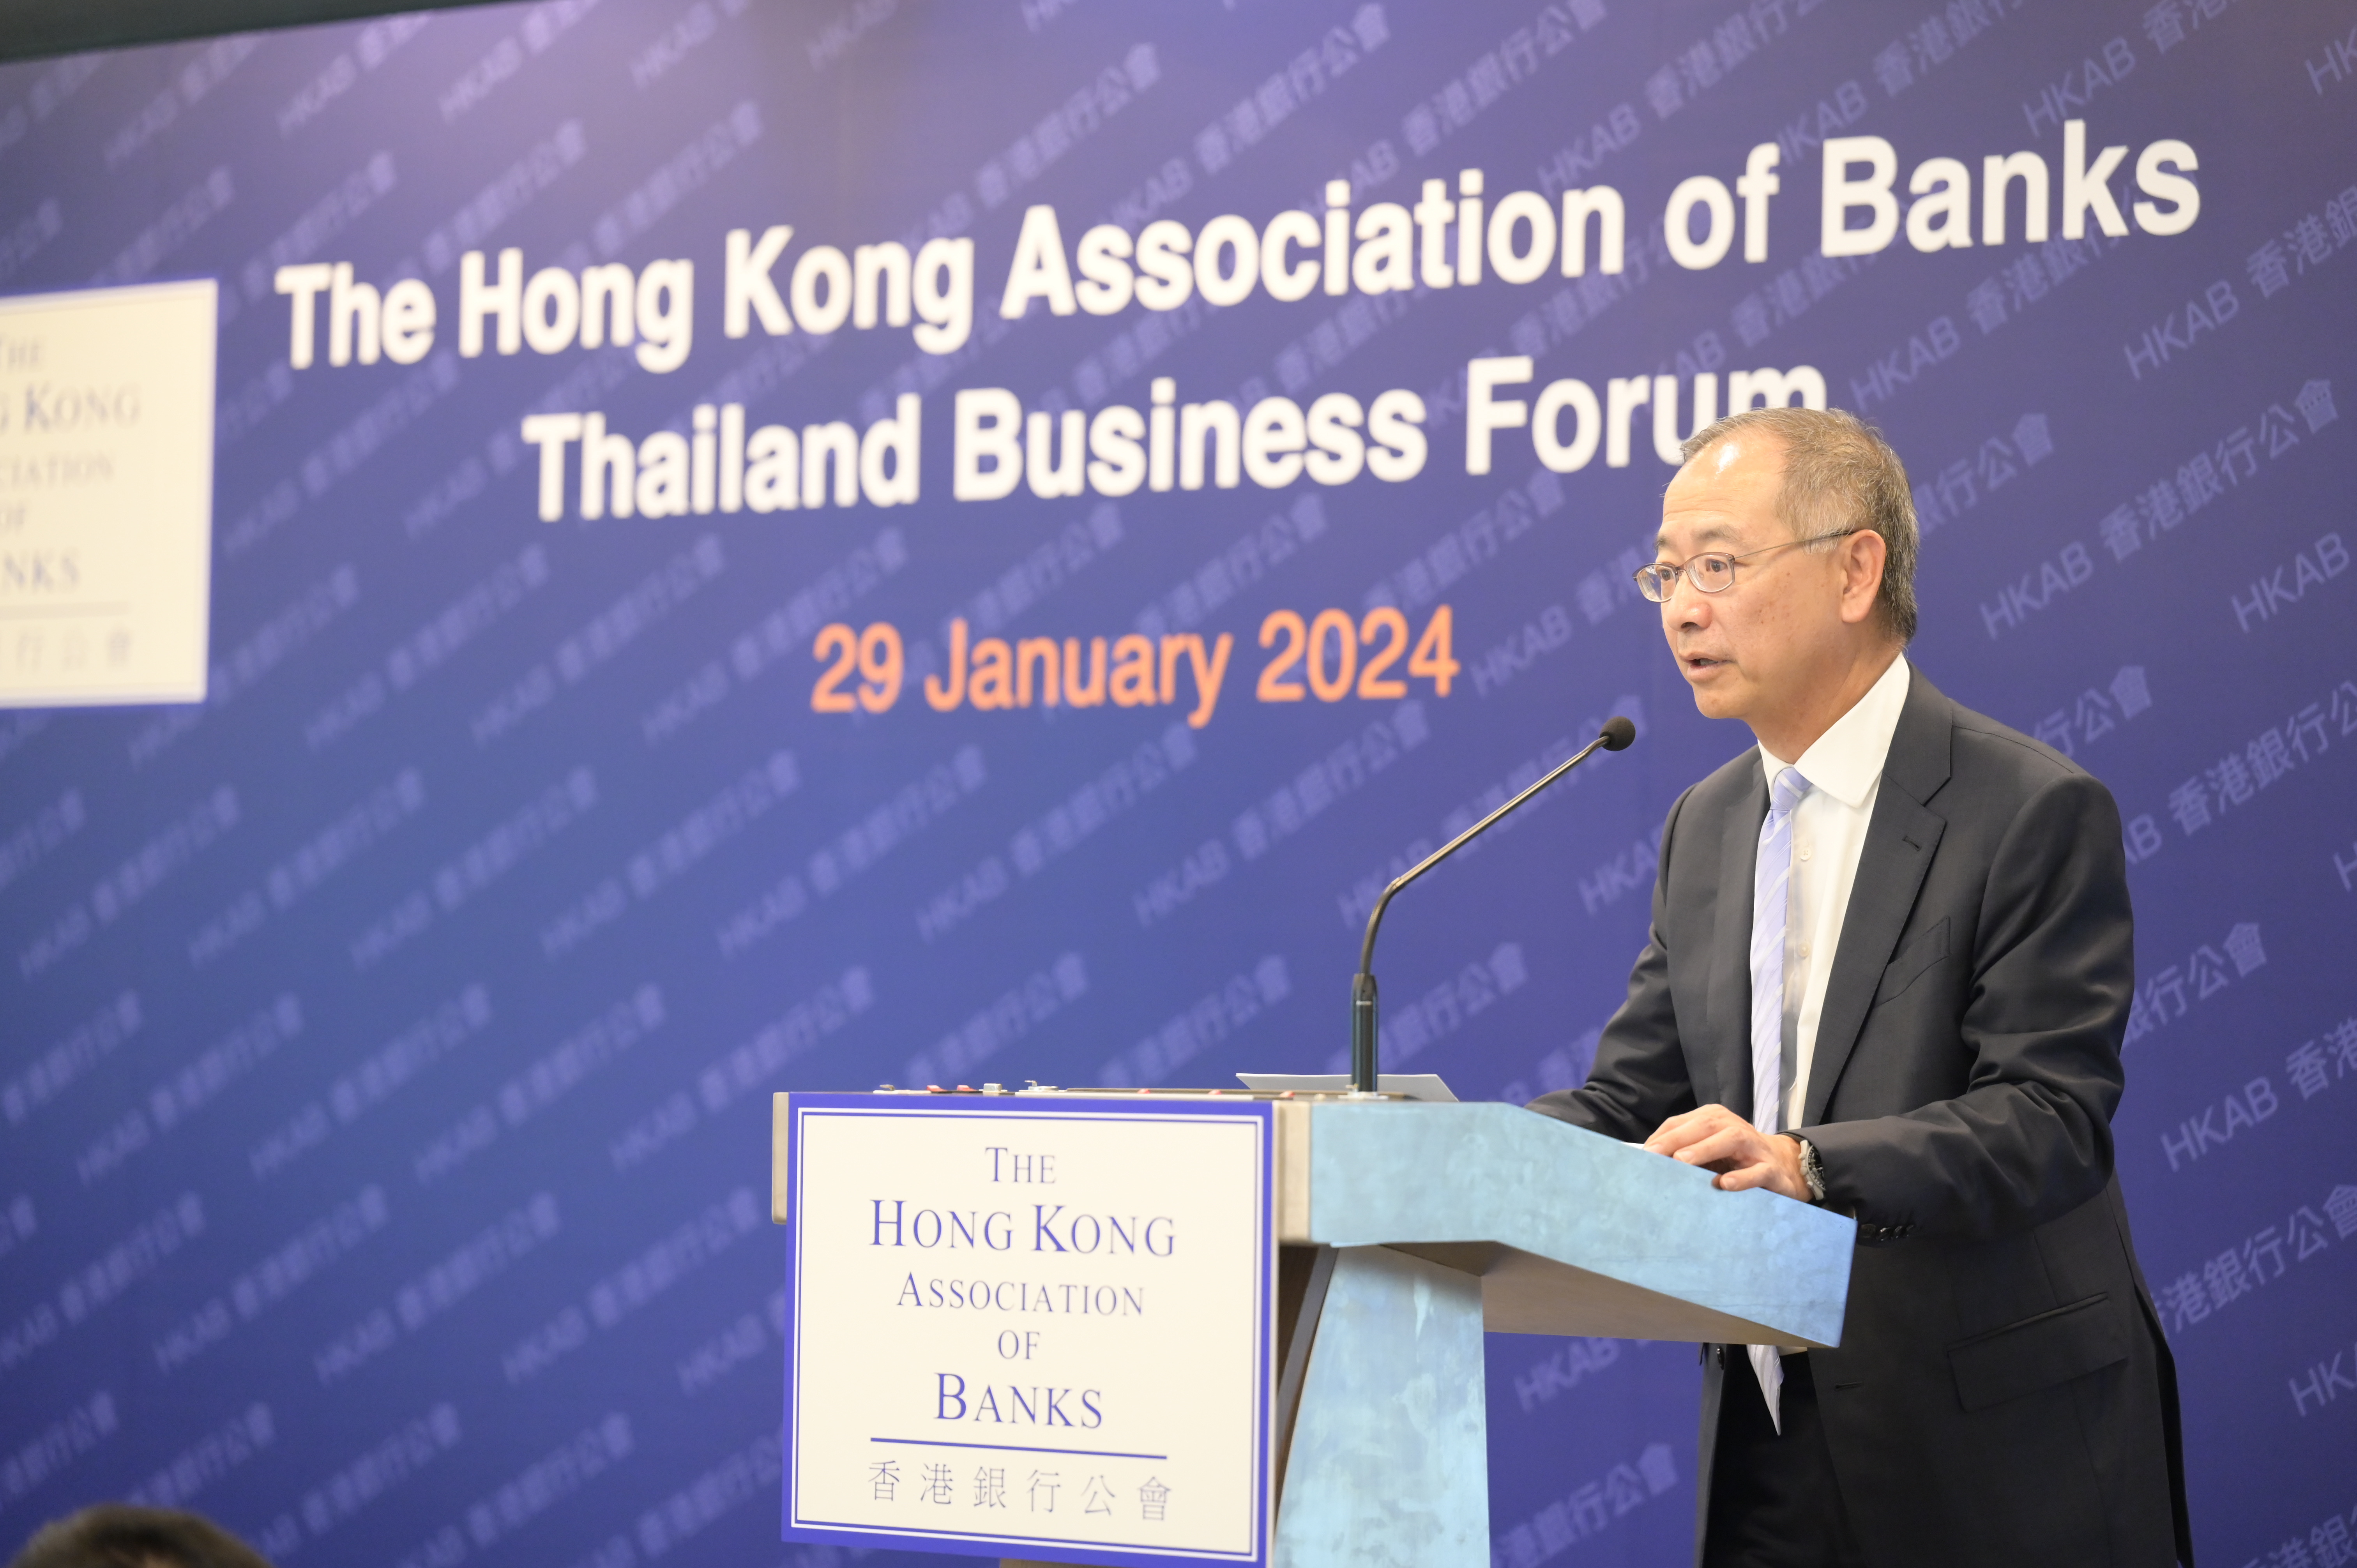 香港金融管理局总裁余伟文1月29日在曼谷的泰国商务论坛上发表主题演讲。